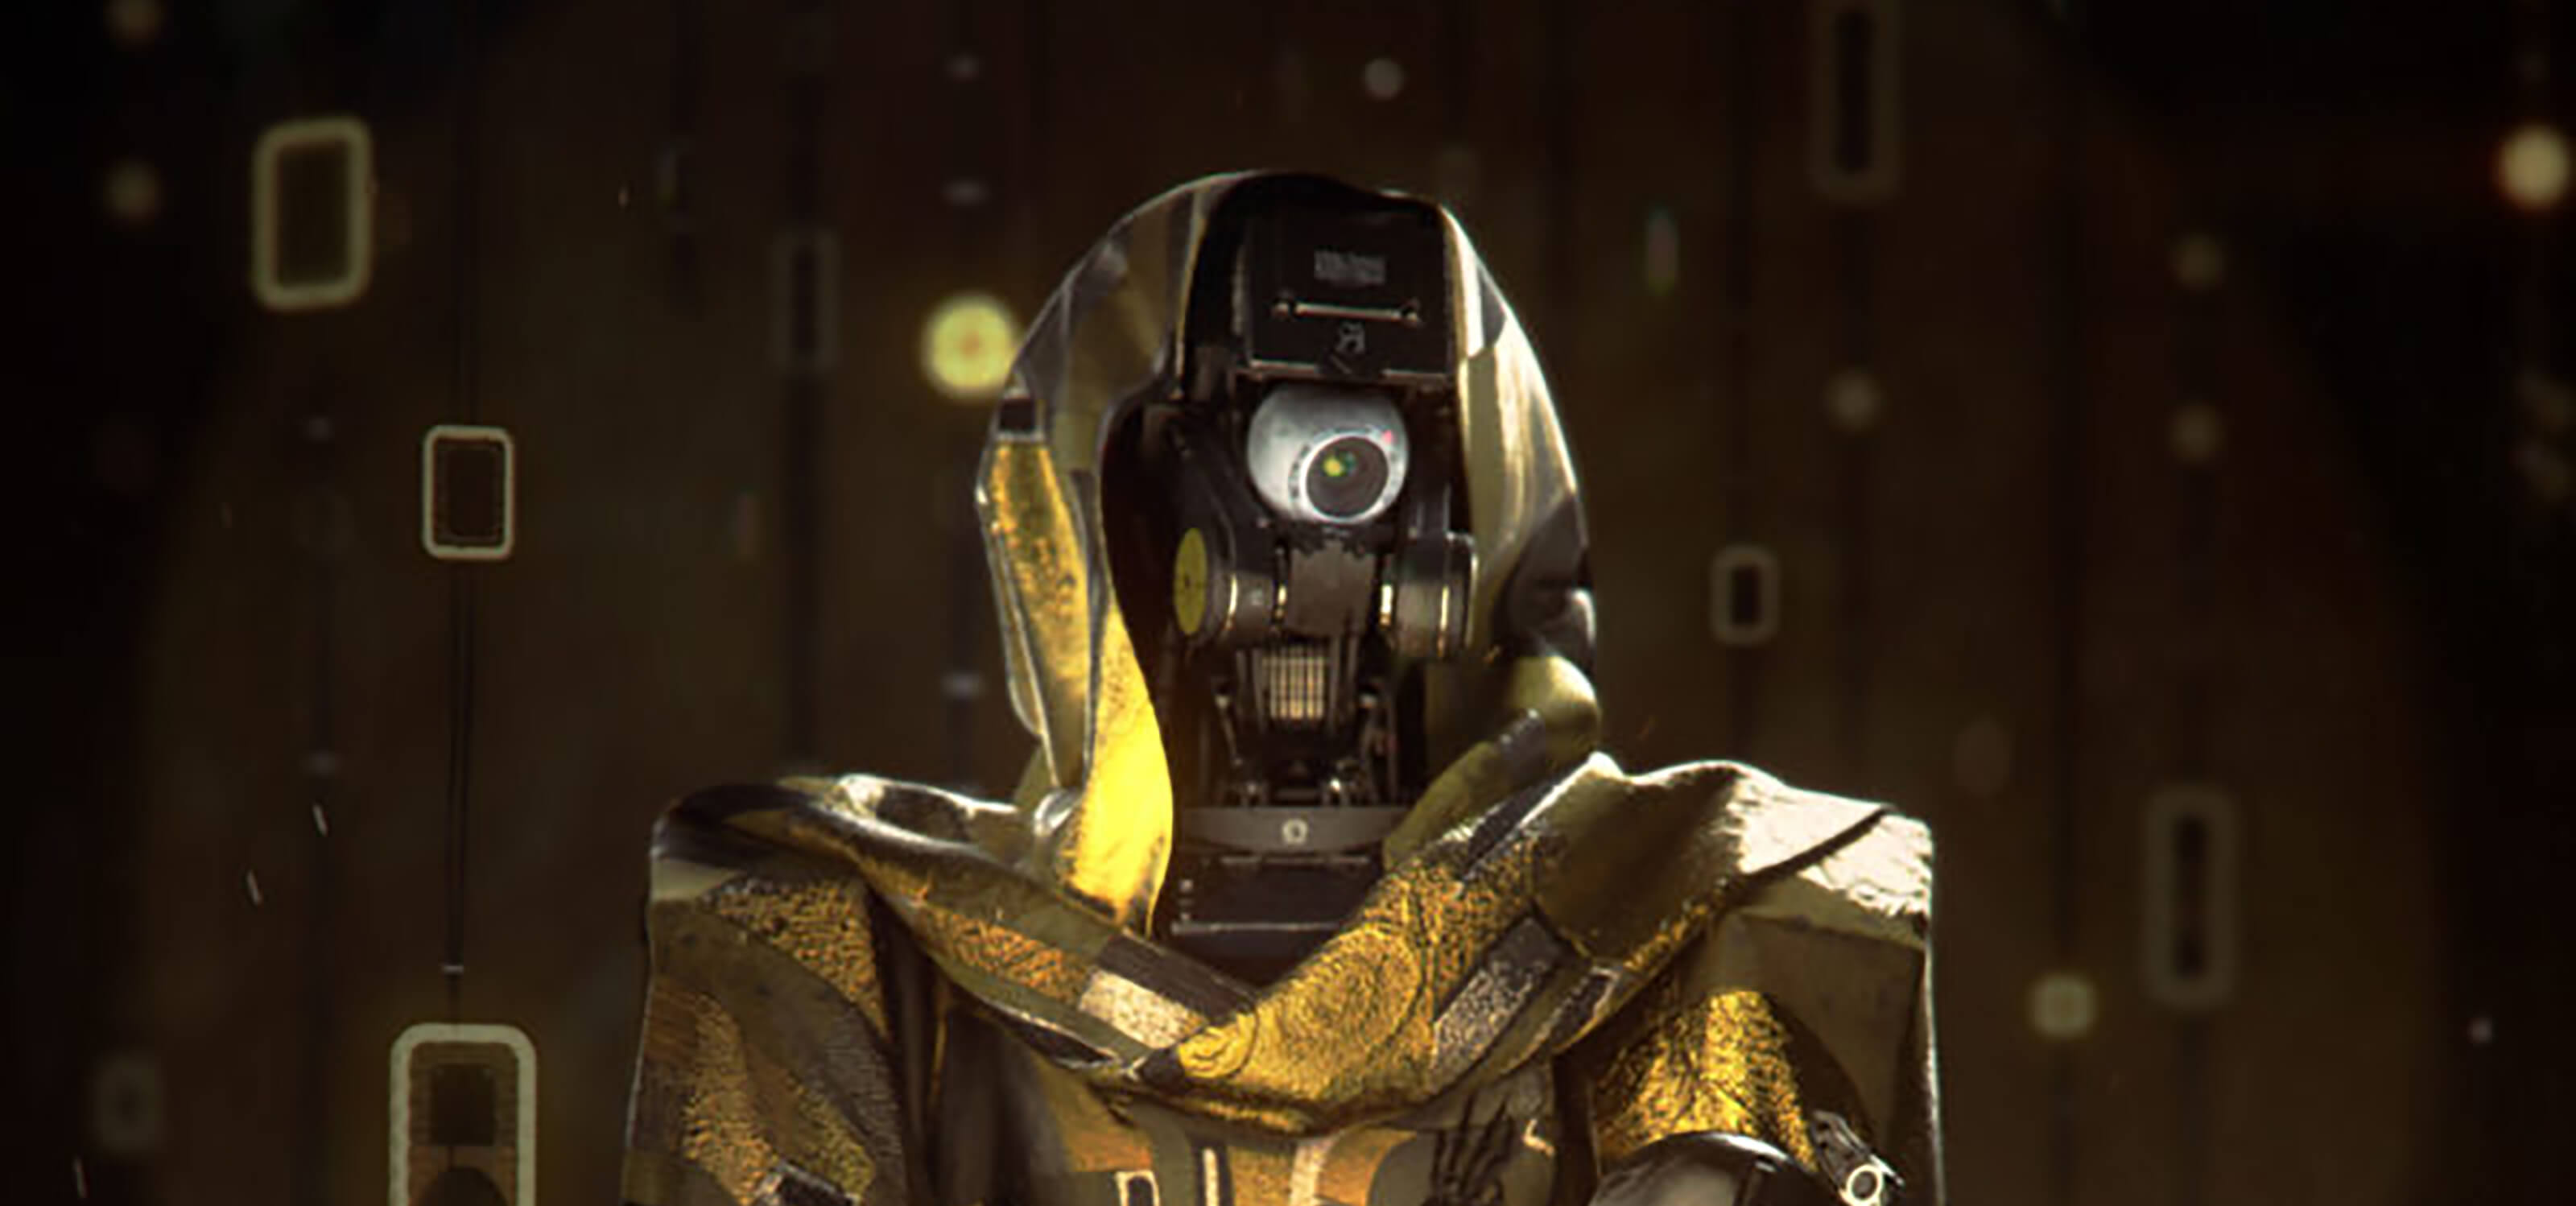 Un robot de un ojo con capucha y capa doradas, inspirado en el trabajo de Gustav Klimt.